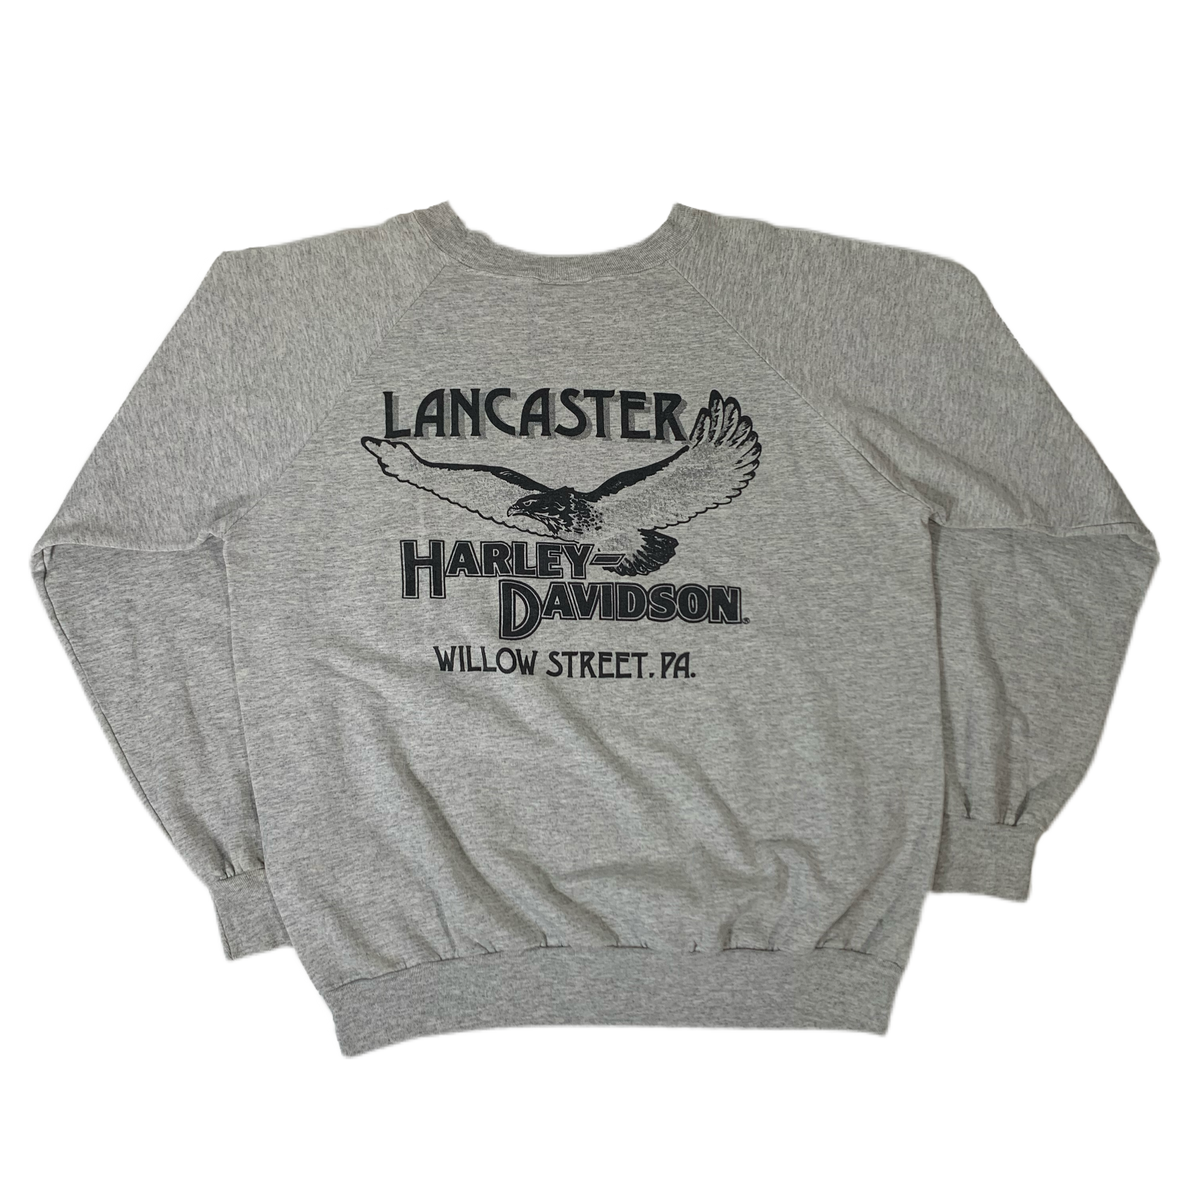 Vintage Harley-Davidson “Lancaster” Raglan Sweatshirt